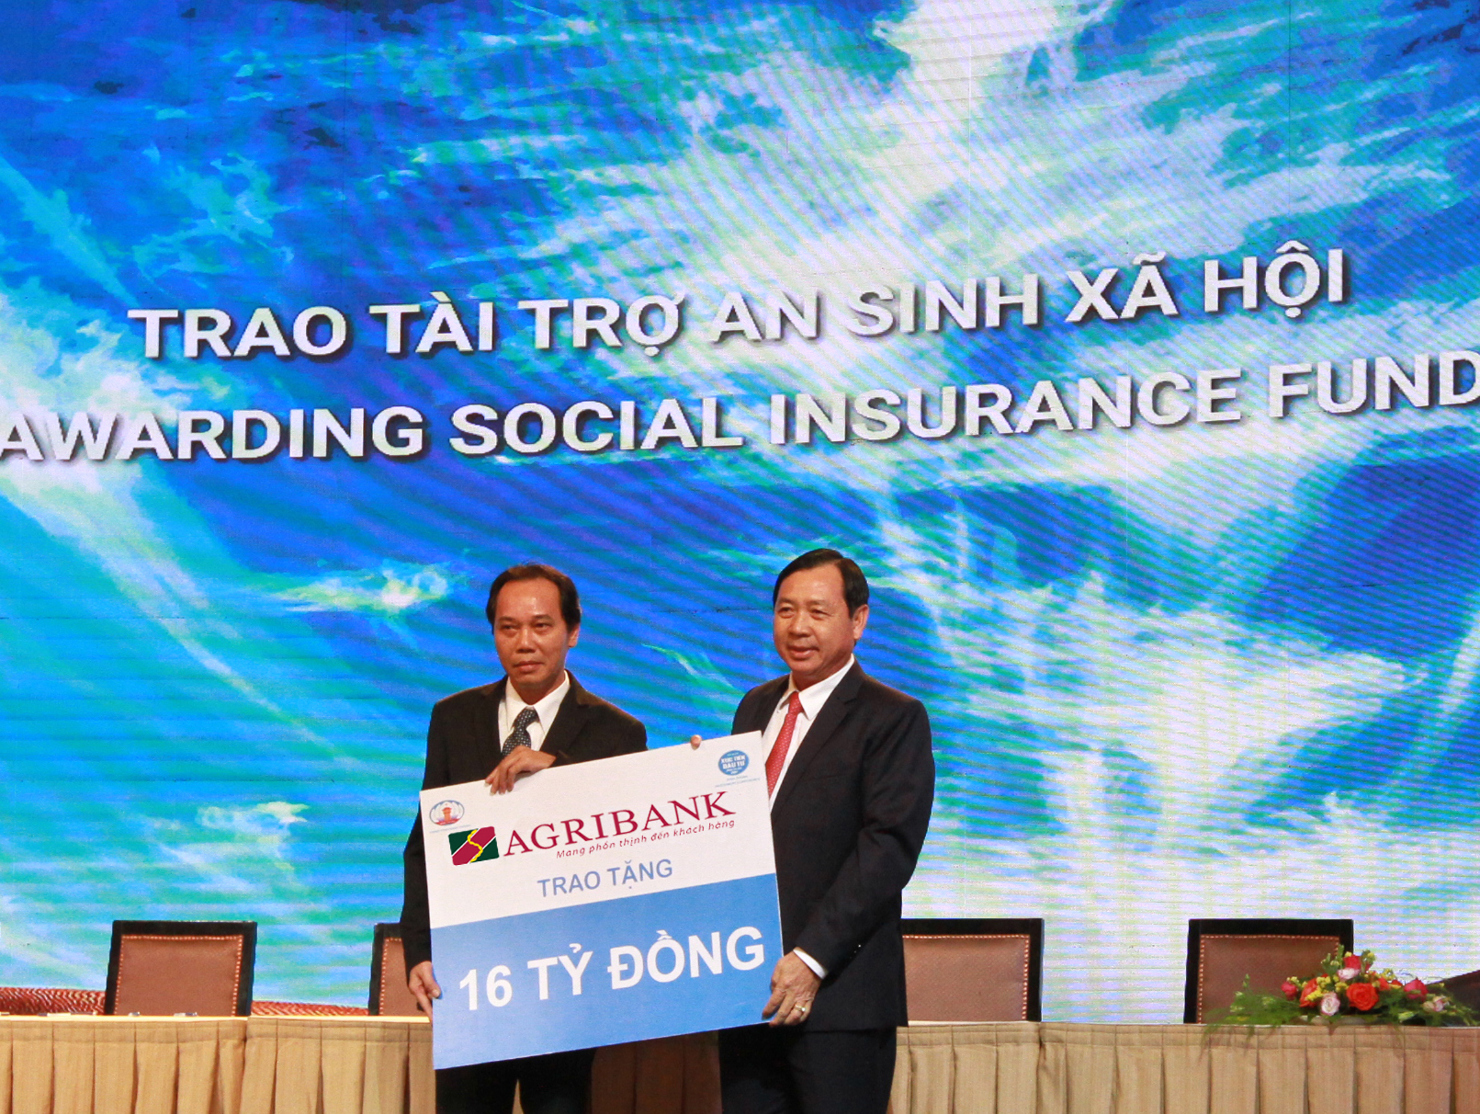 Tổng giám đốc Agribank Tiết Văn Thành dự và trao tặng tỉnh Bình Thuận 16 tỷ đồng thực hiện công tác an sinh xã hội.